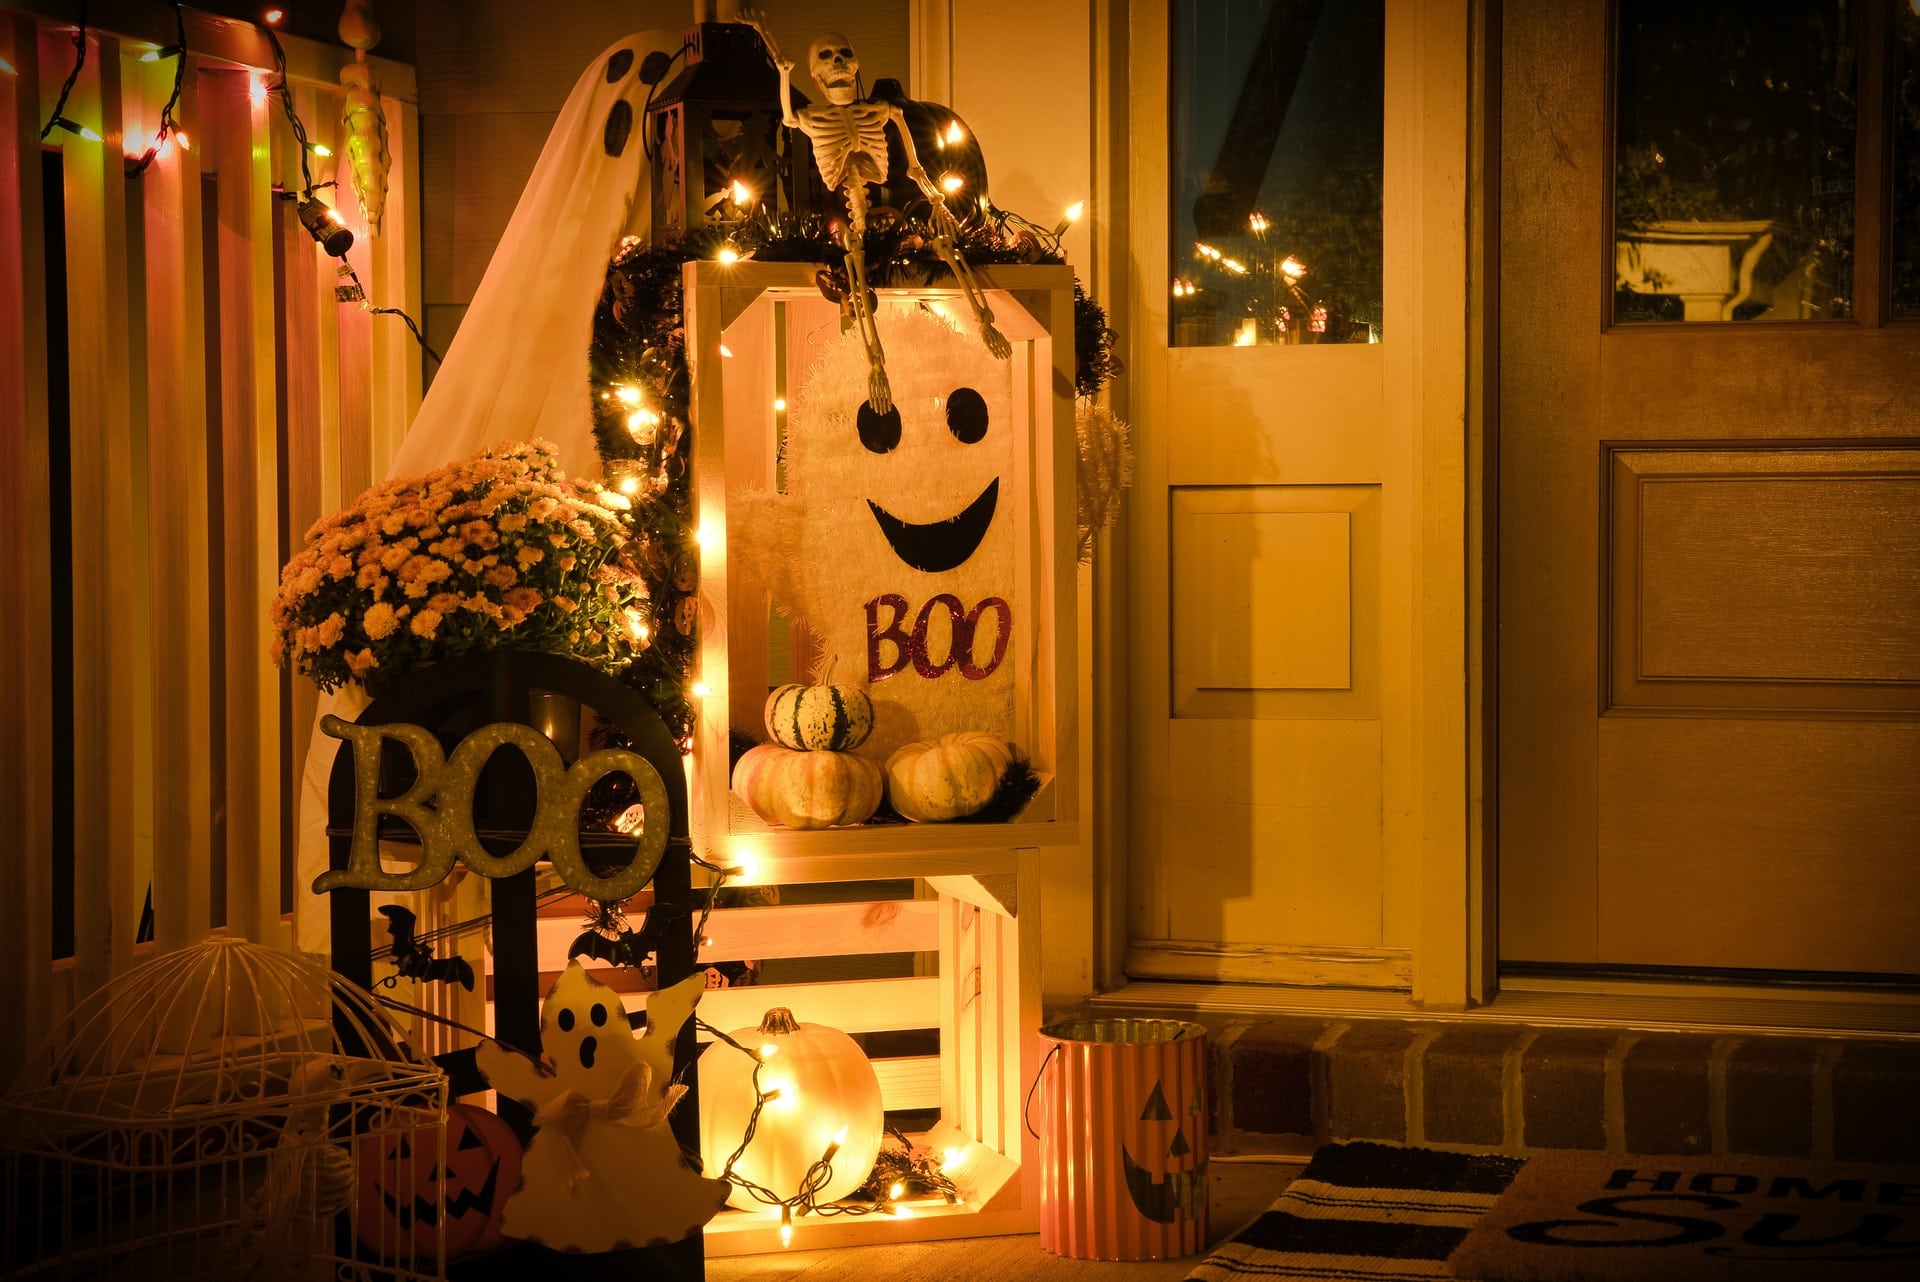 Atlas Language School Halloween Decoration in front of the door